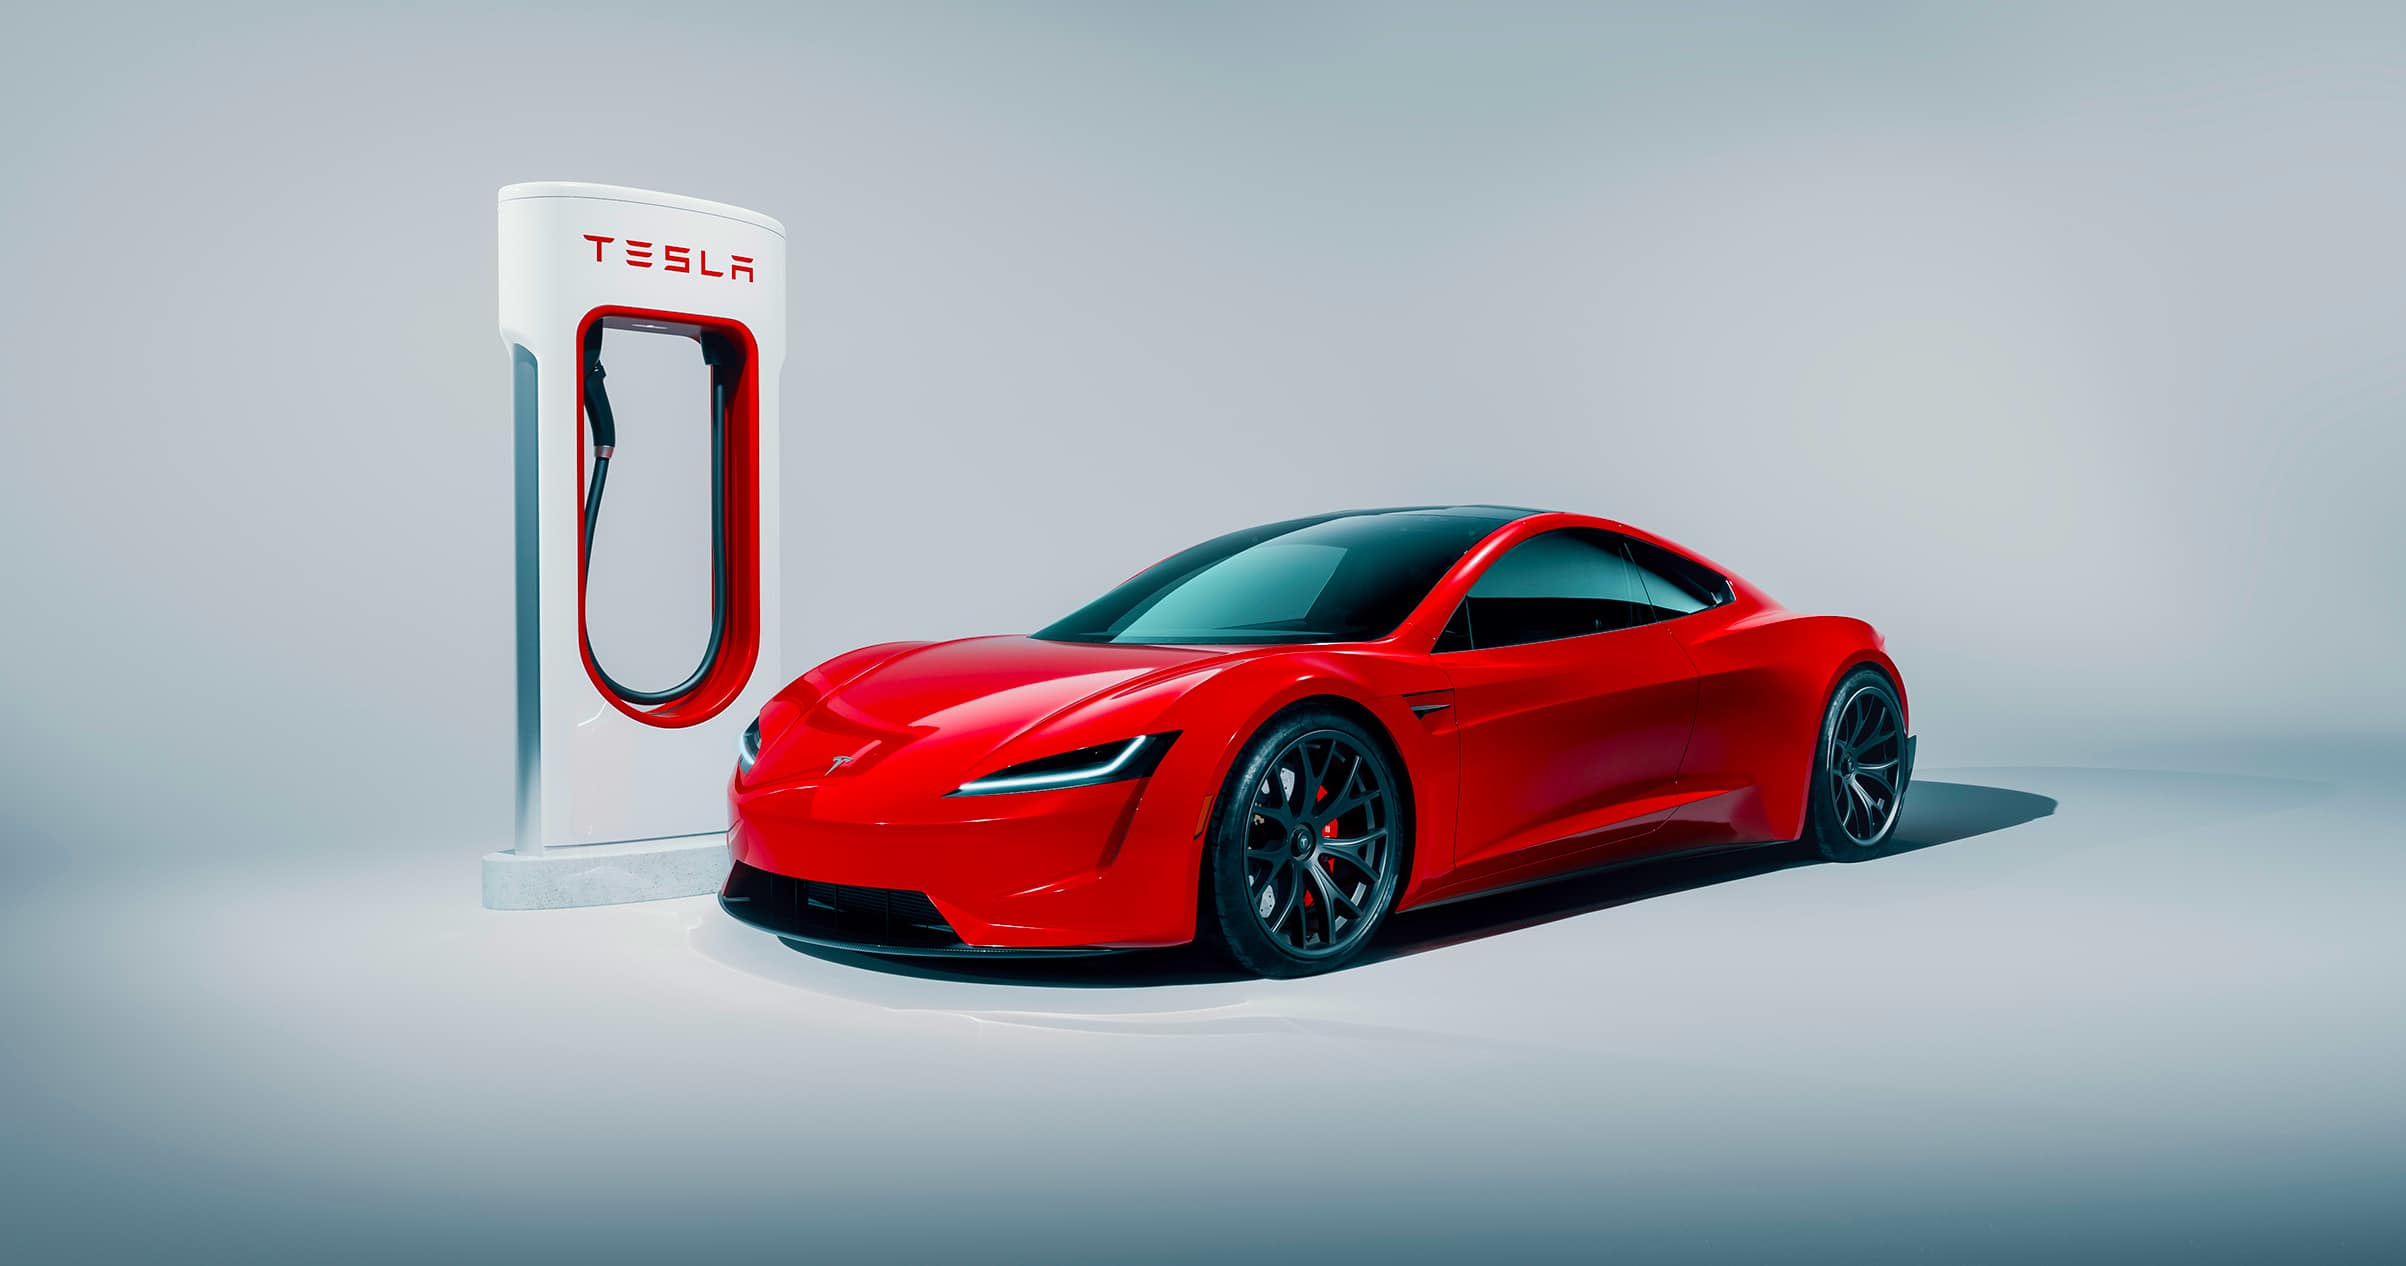 Η Tesla καινοτομεί στην ιδιωτική ασφάλιση αυτοκινήτων